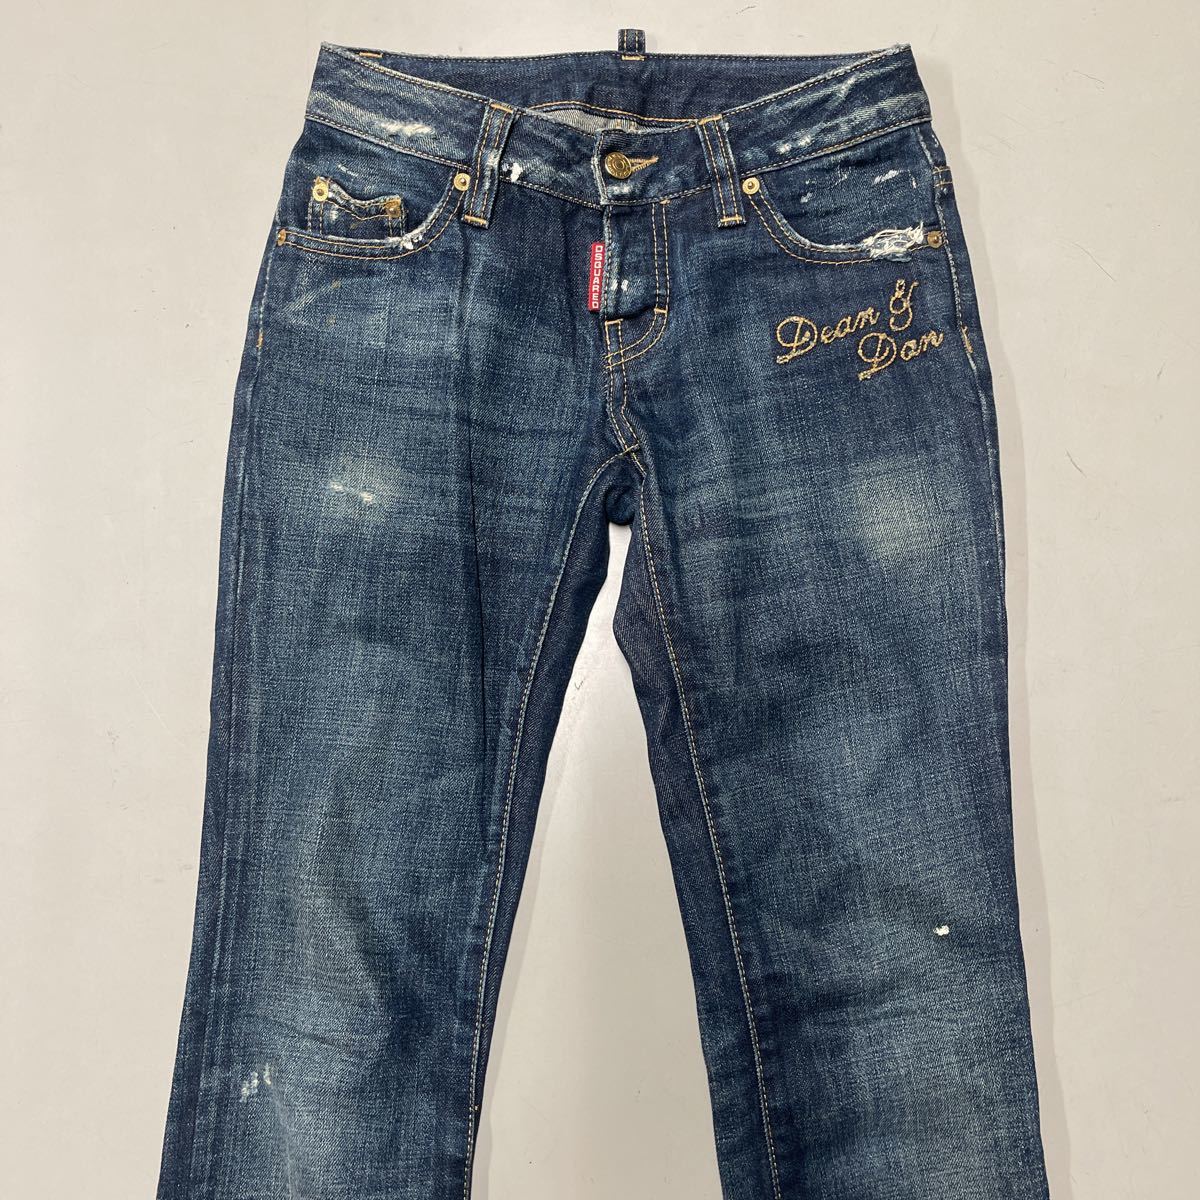 DSQUARED2 Dsquared женский Denim джинсы размер 36 тонкий обтягивающий брюки Италия производства MADE IN ITALY б/у одежда есть перевод хлопок 100